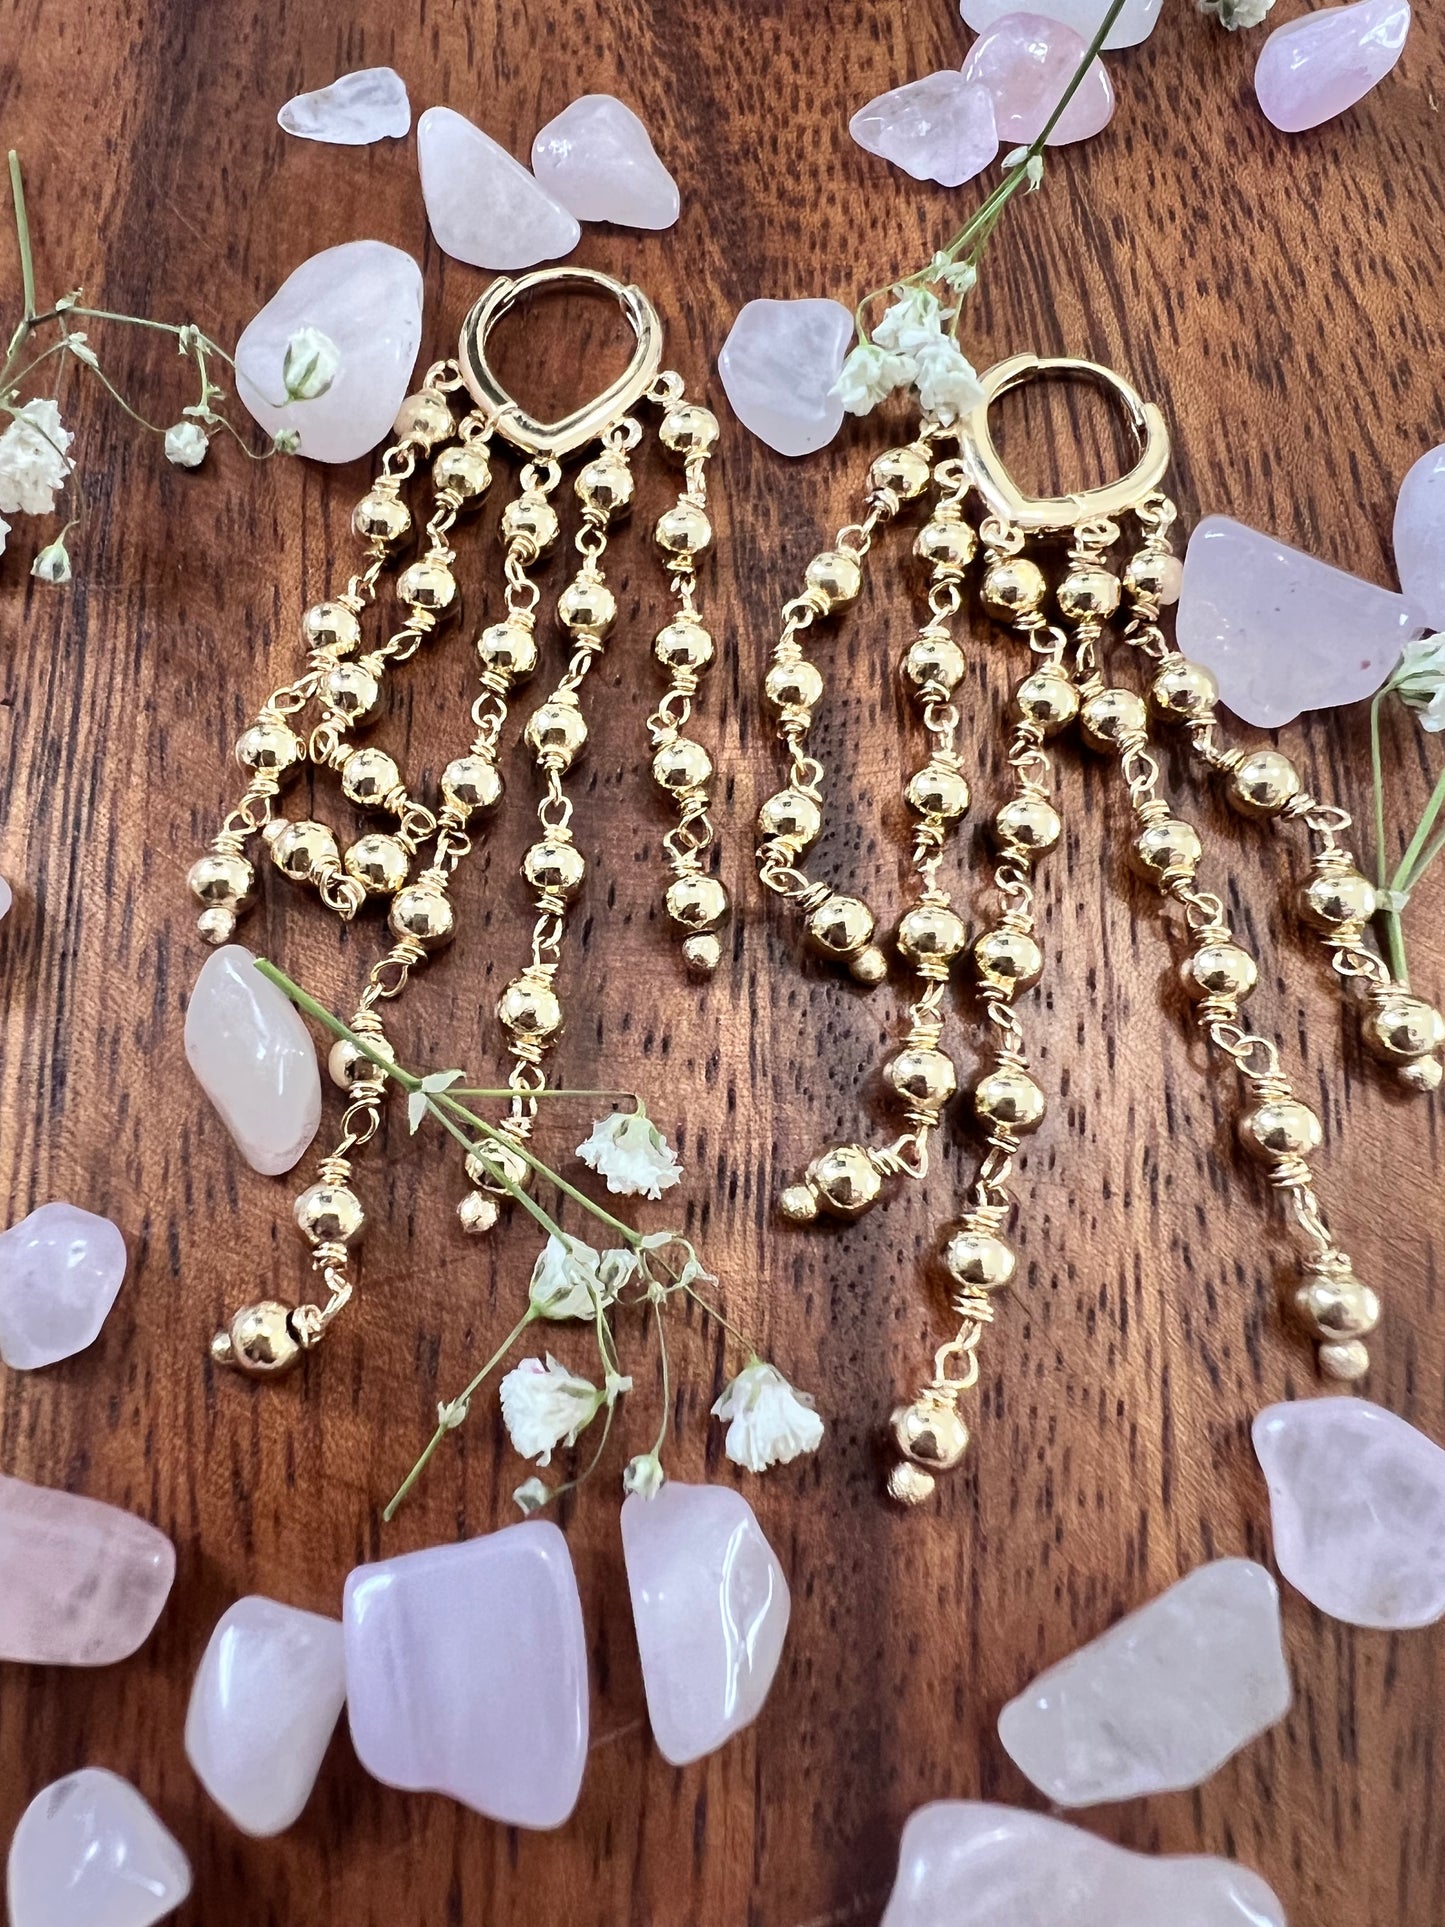 Brazilian Collection Dangling Beads Earrings